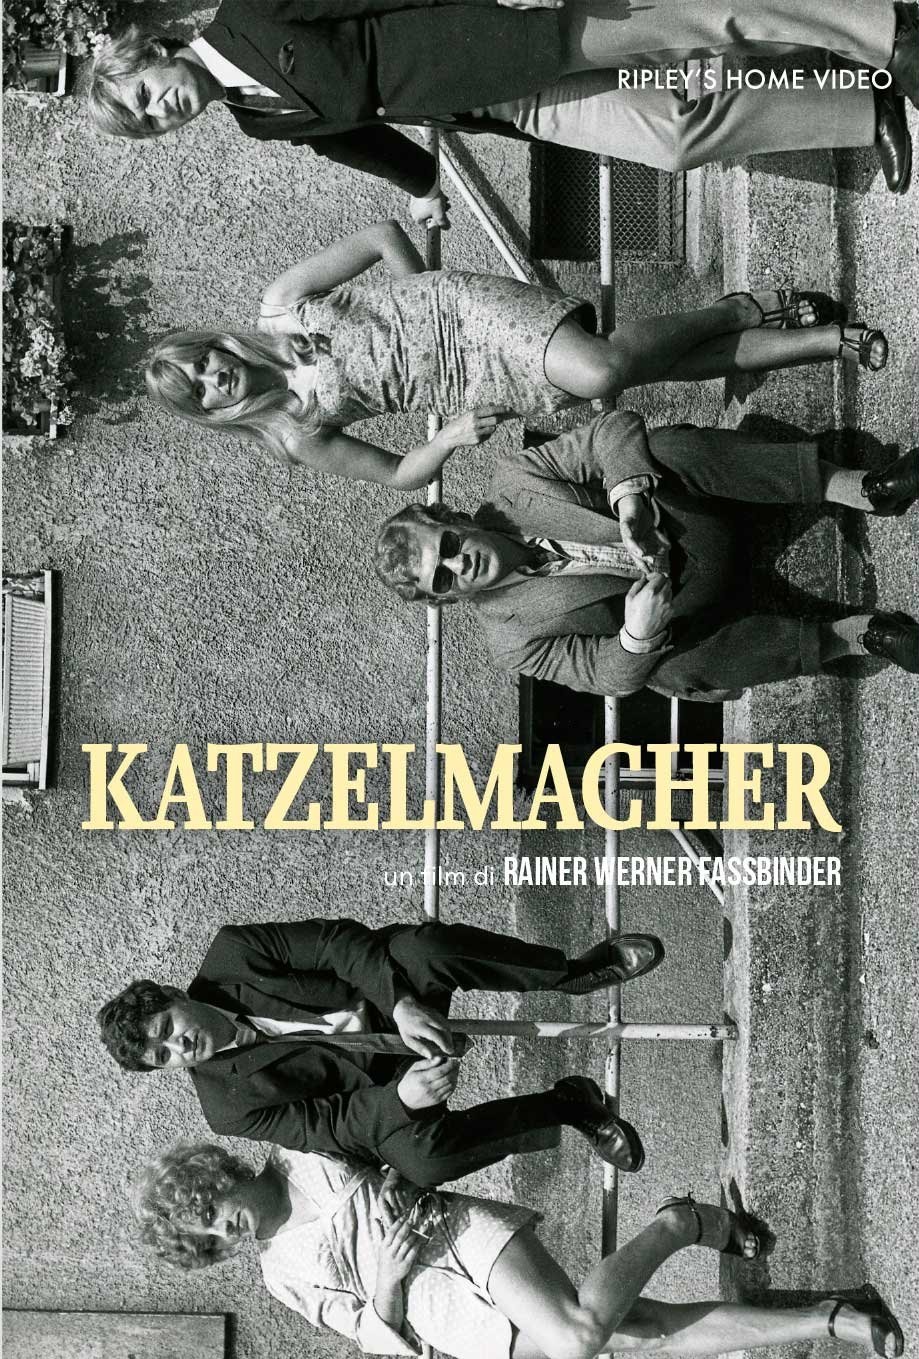 Katzelmacher [B/N] [Sub-ITA] (1969)